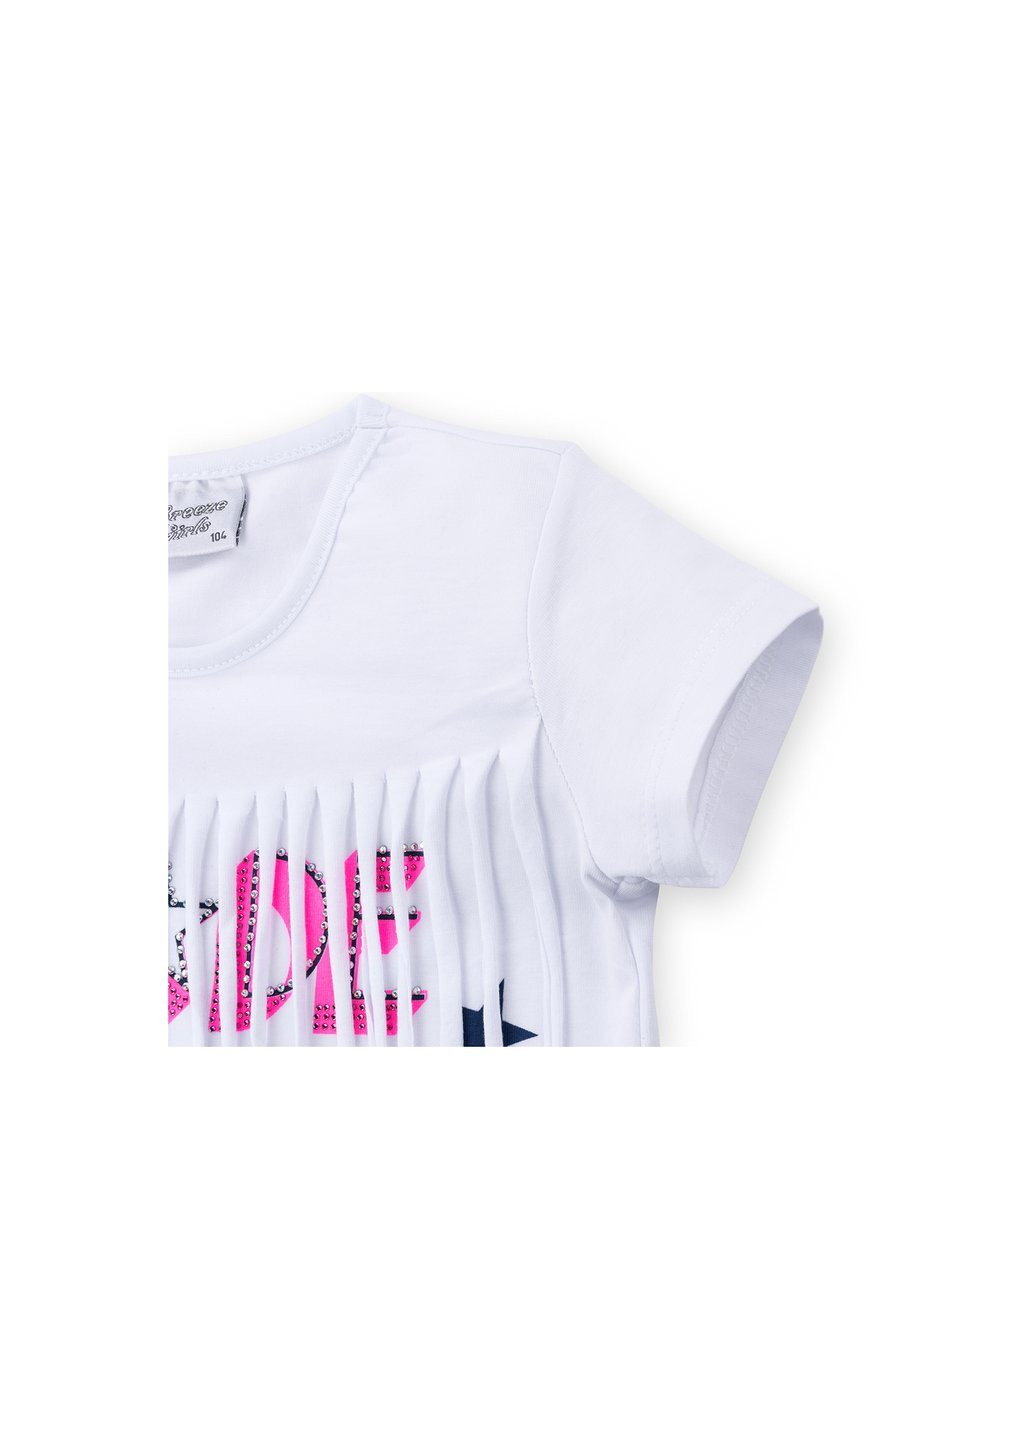 Комбінований літній набір дитячого одягу футболка із зірочками із шортами (9036-116g-white) Breeze